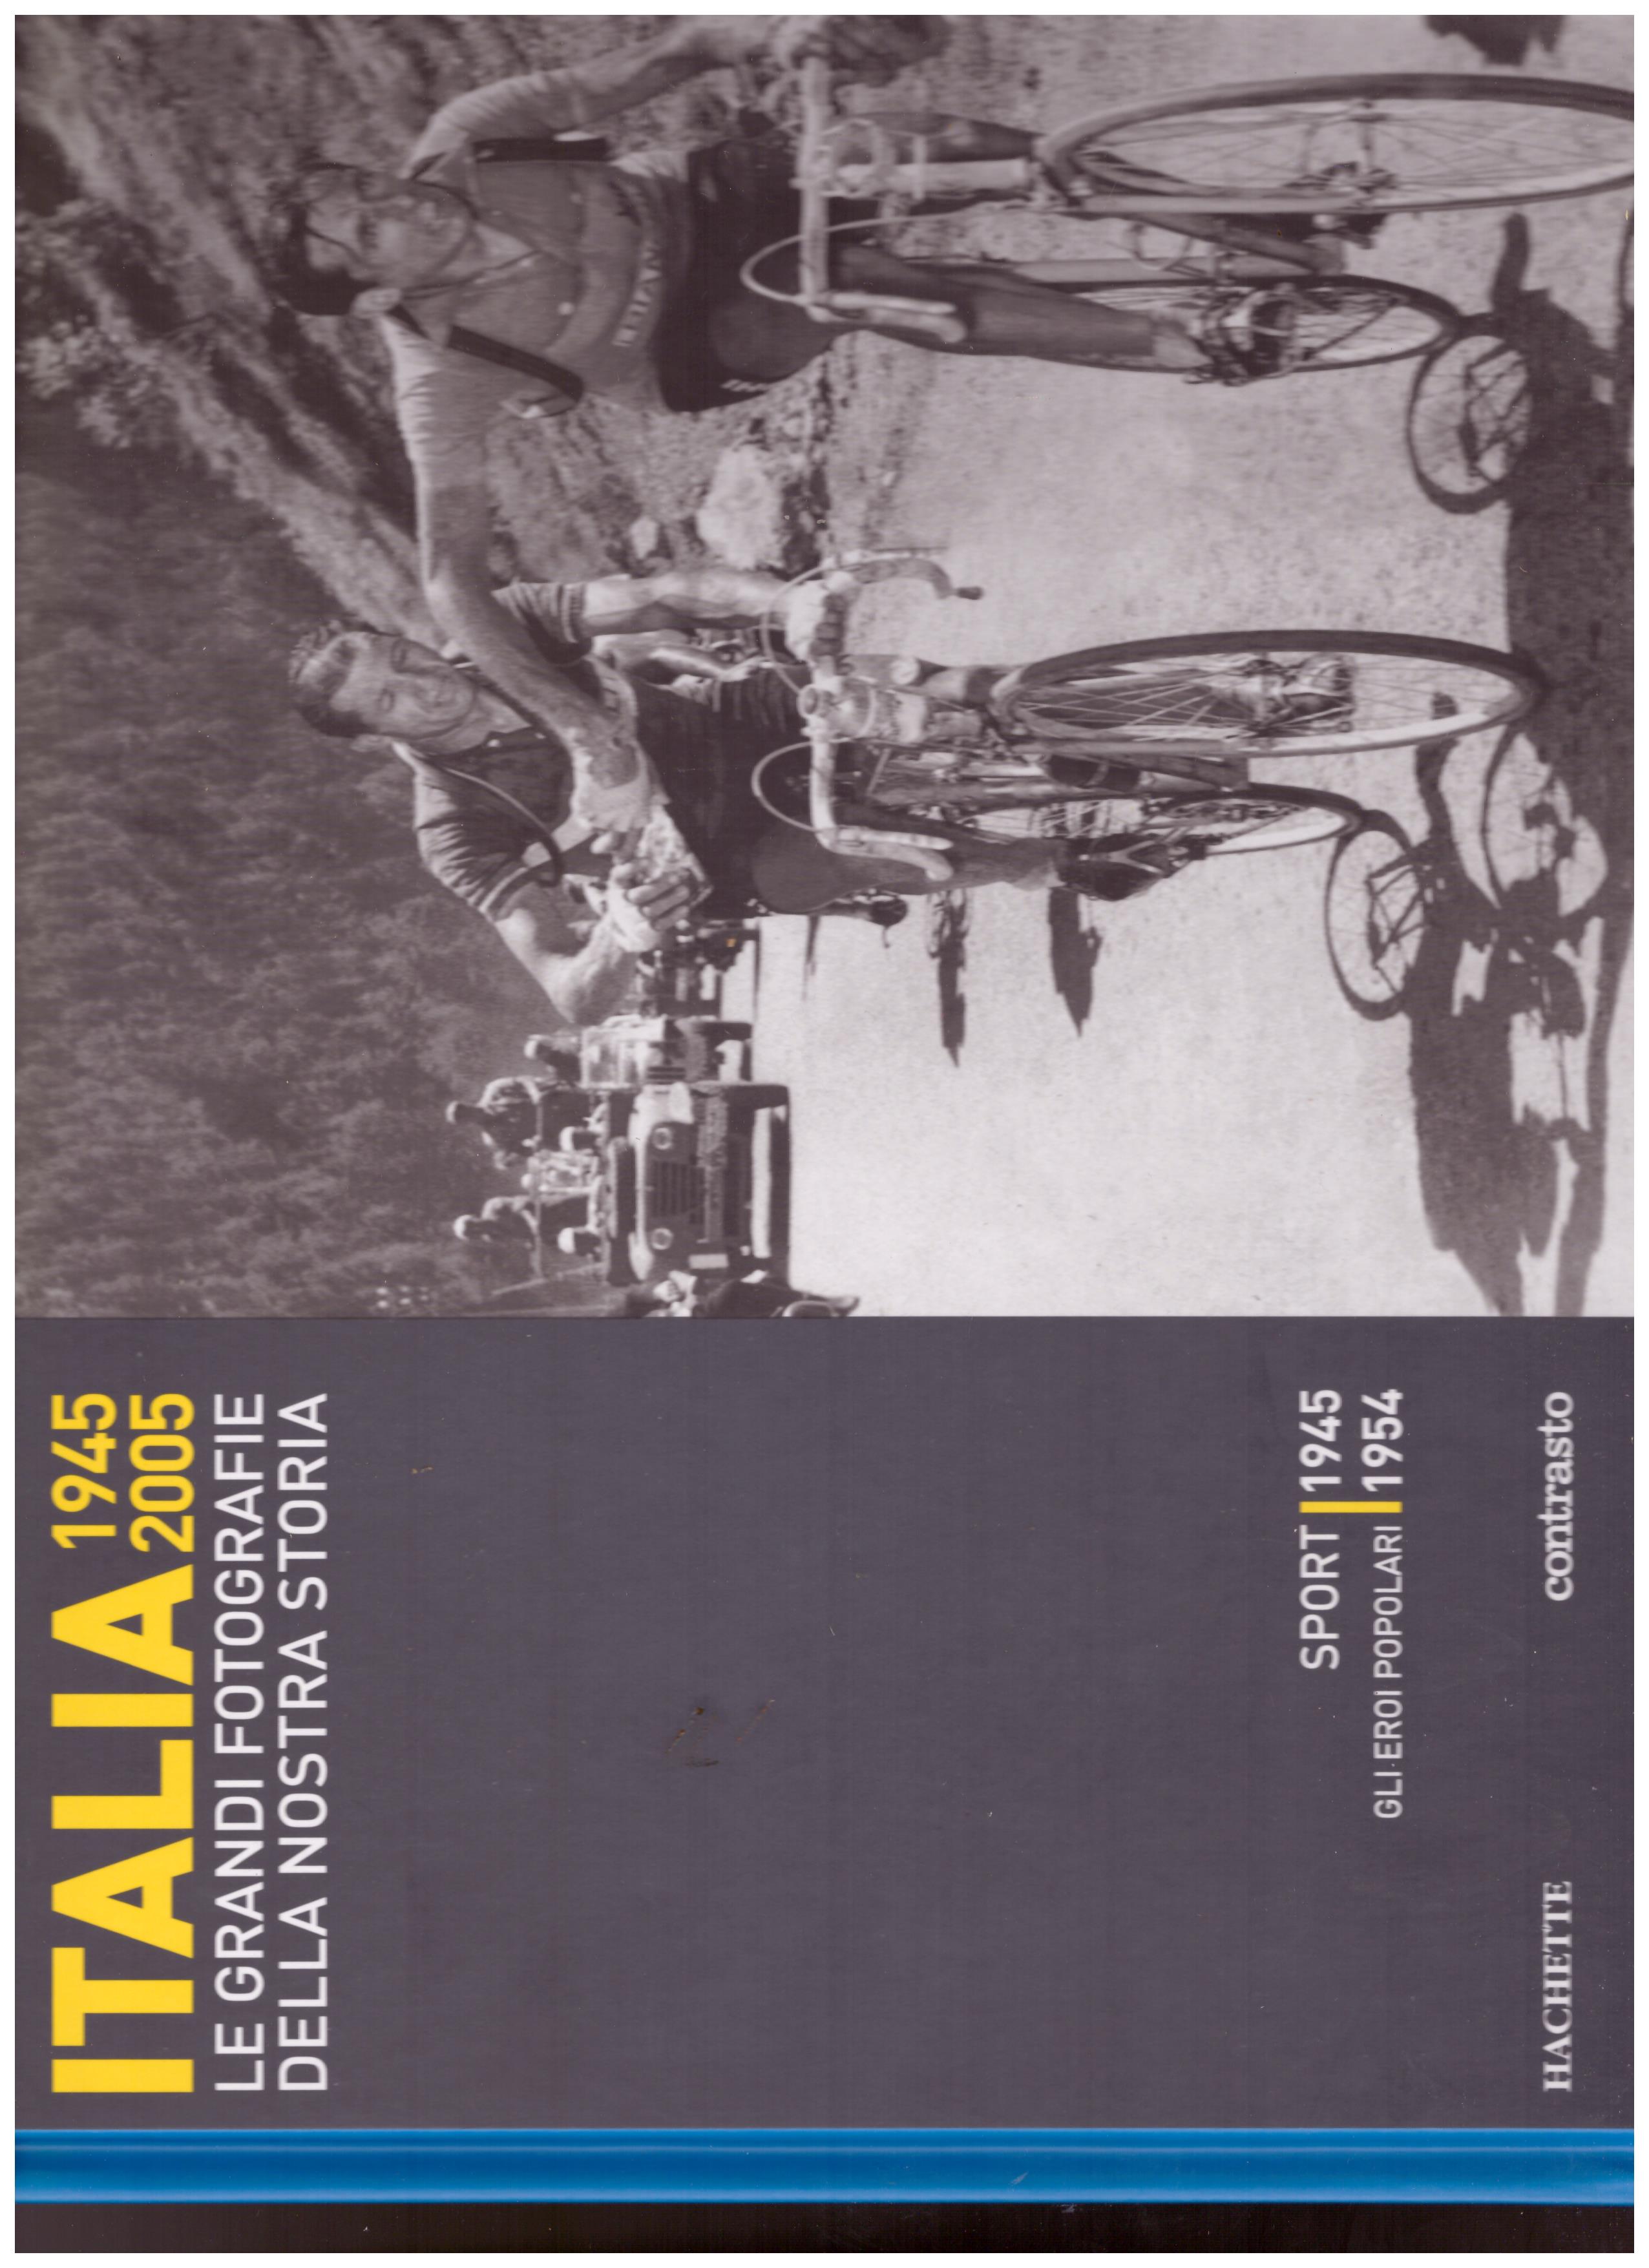 Titolo: Italia 1945-2005 le grandi fotografie della nostra storia, sport 1945, gli eroi popolari 1954  Autore : AA.VV.   Editore: hachette, 2006